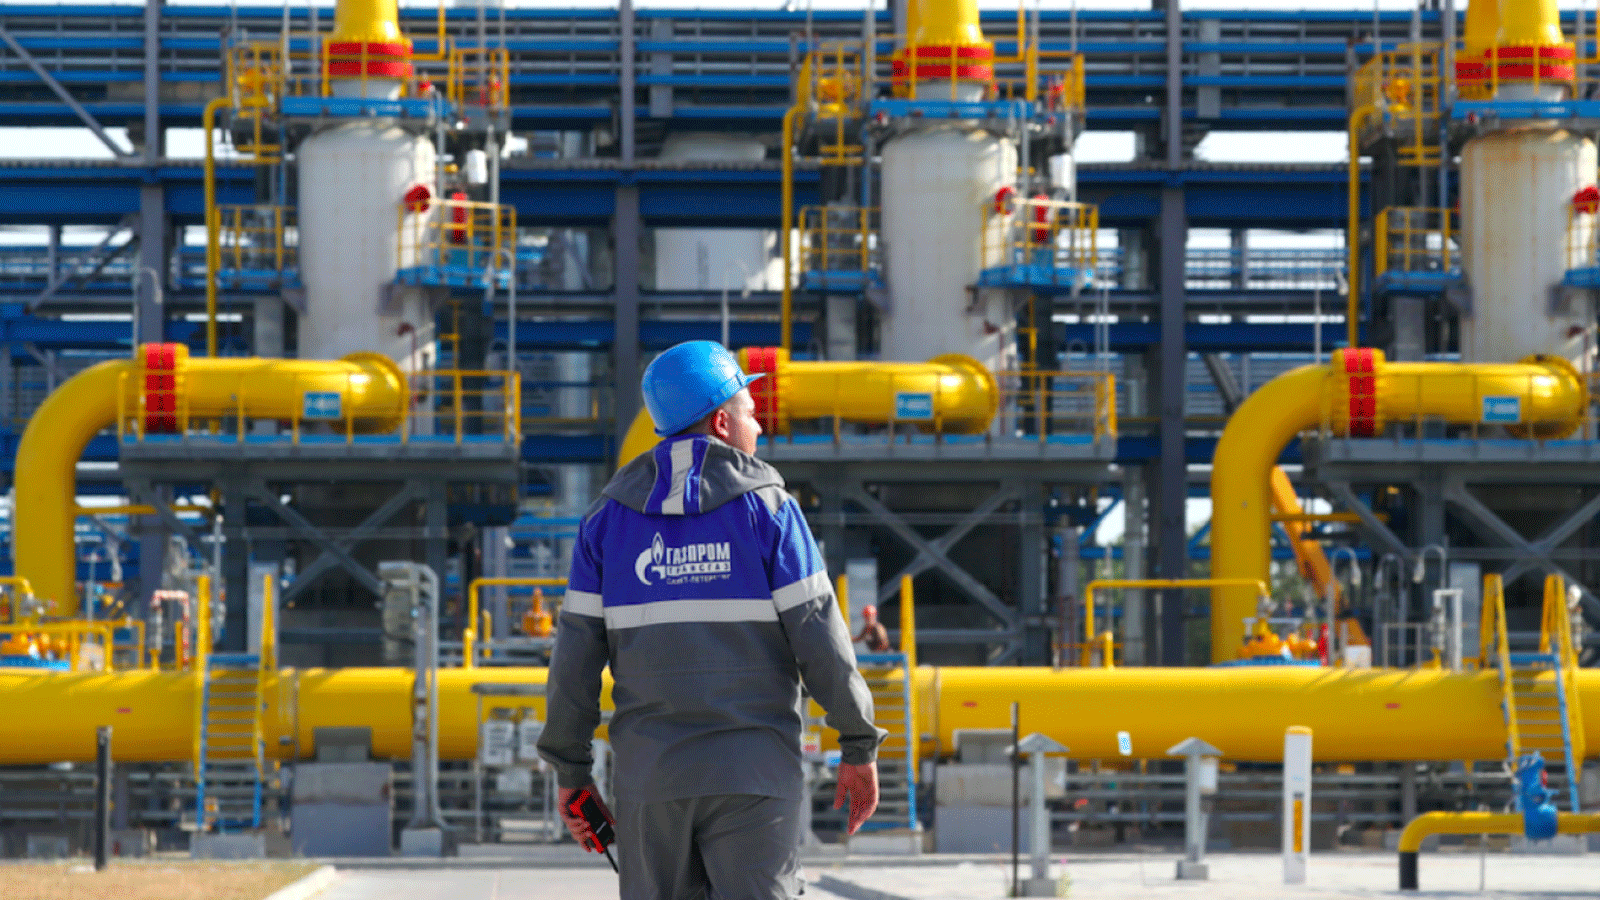 شركة غازبروم الروسية تتعرض لانتقادات في أوروبا لدورها في أزمة أسعار الغاز في القارة(TASS)